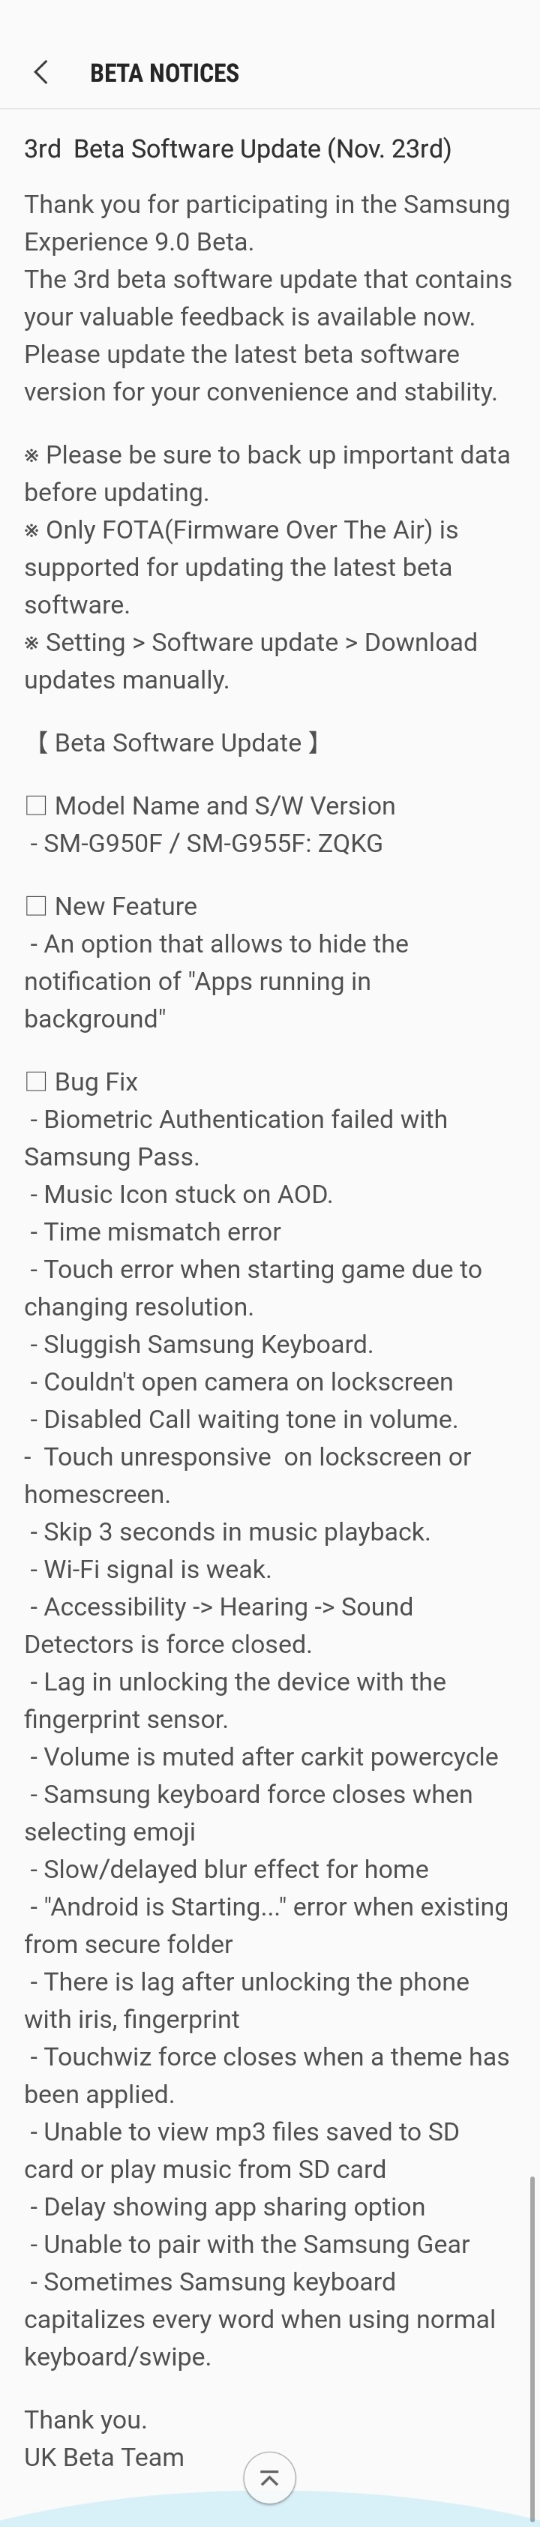 Samsung Galaxy S8 Oreo Beta 3 update 2